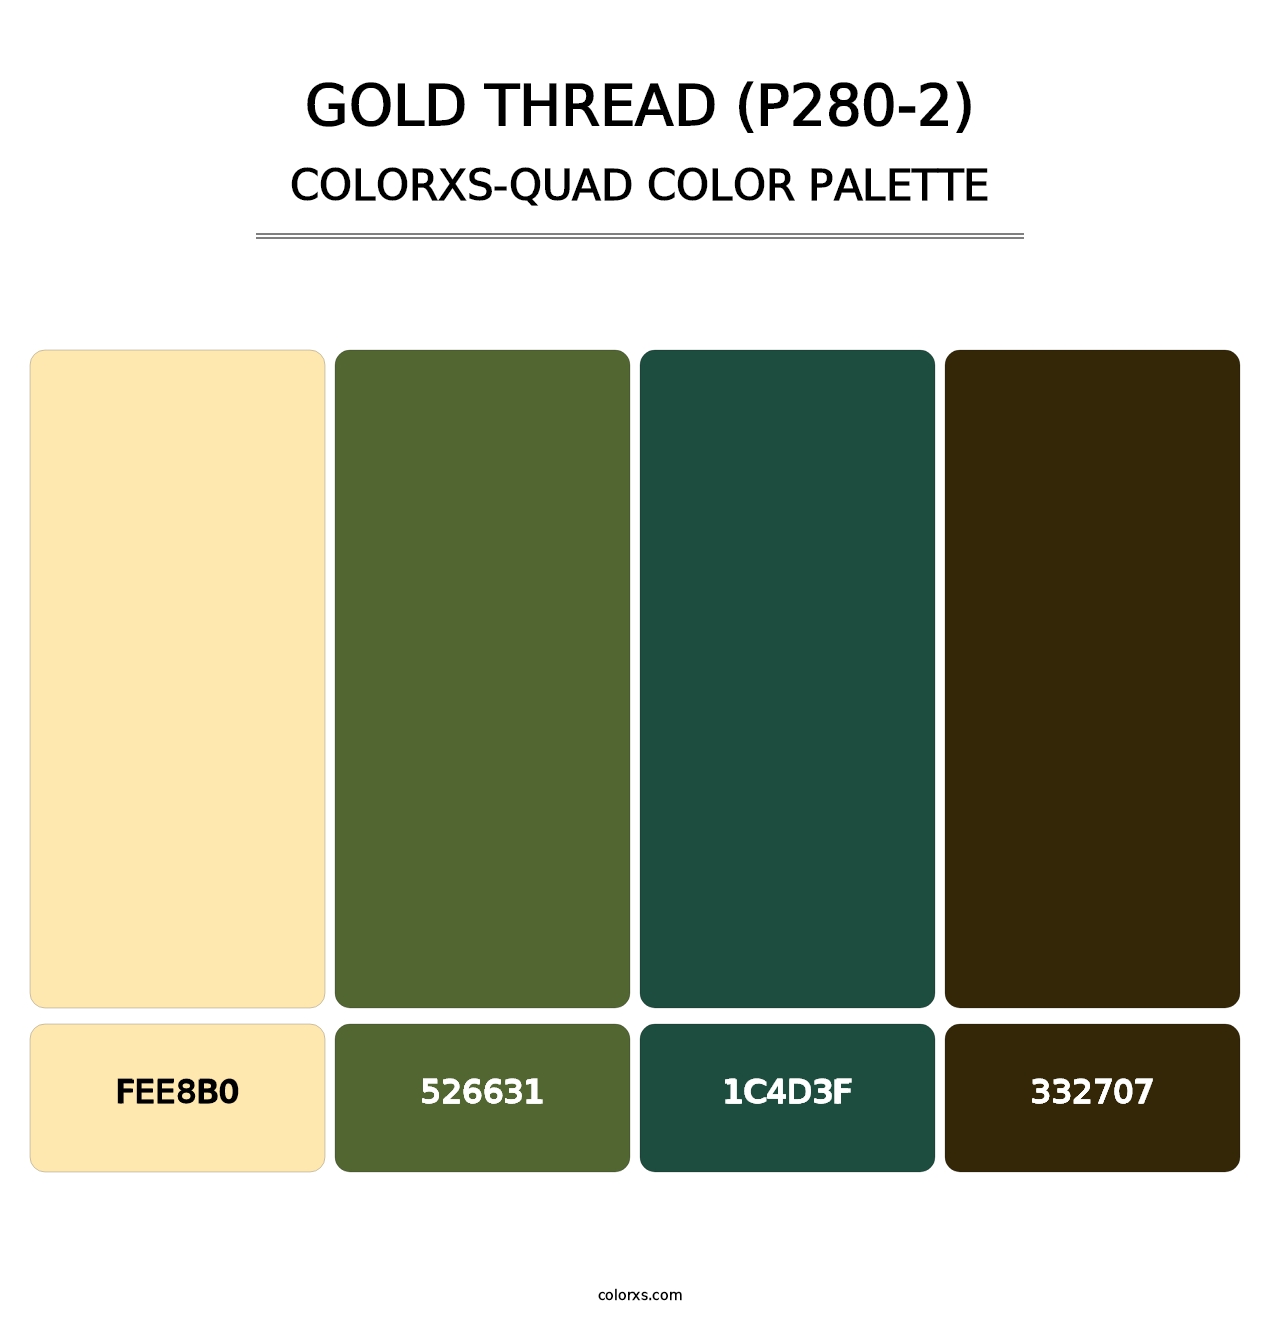 Gold Thread (P280-2) - Colorxs Quad Palette